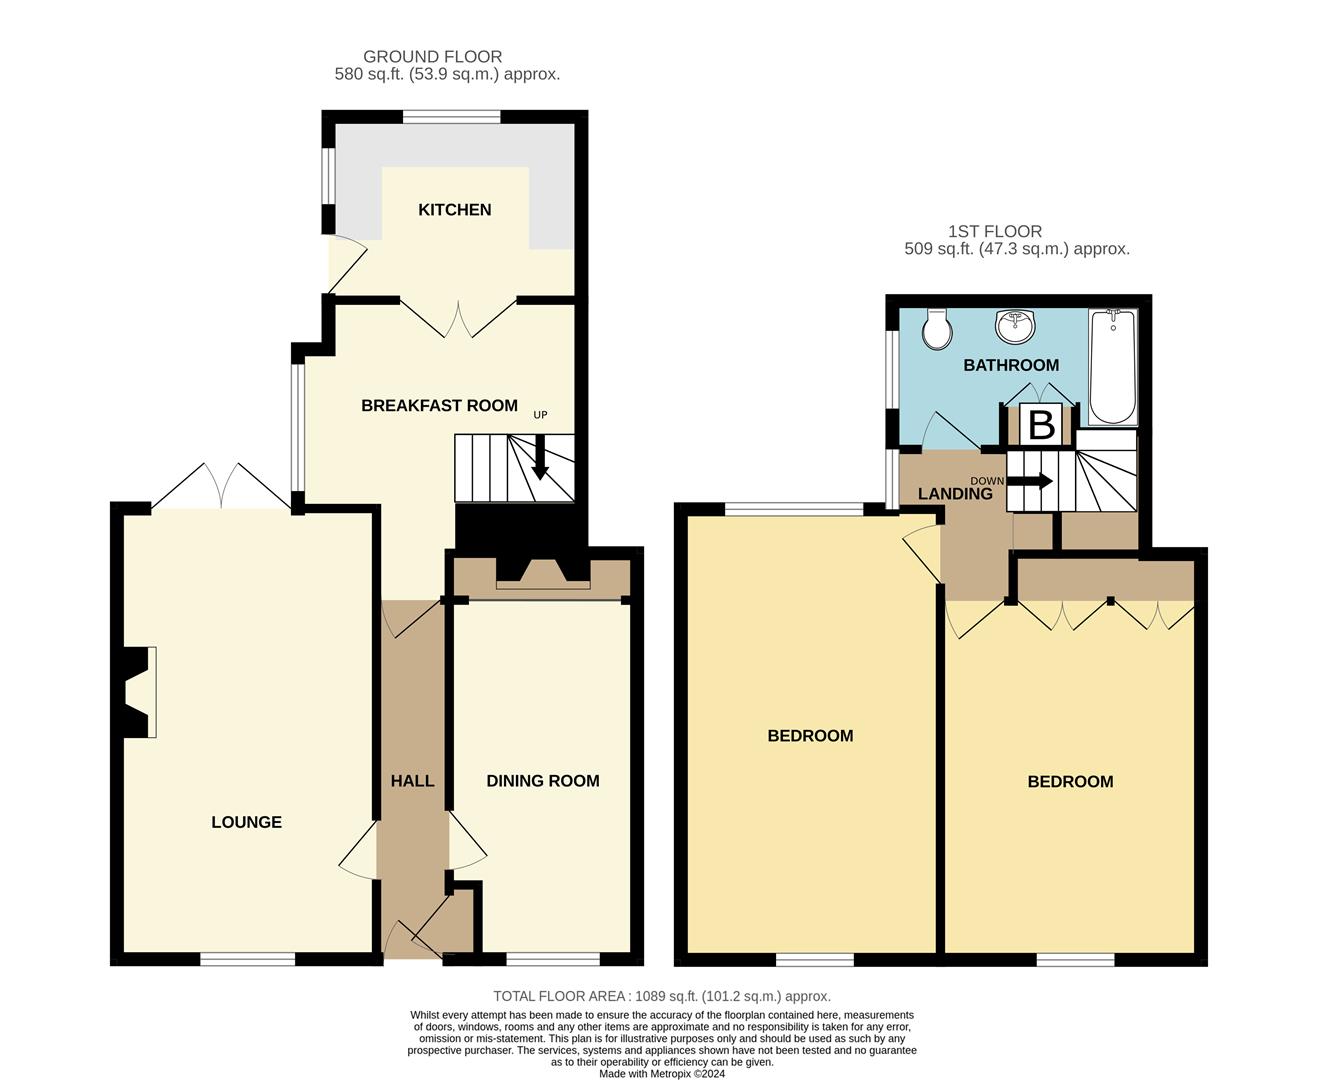 2 bed cottage for sale - Property floorplan